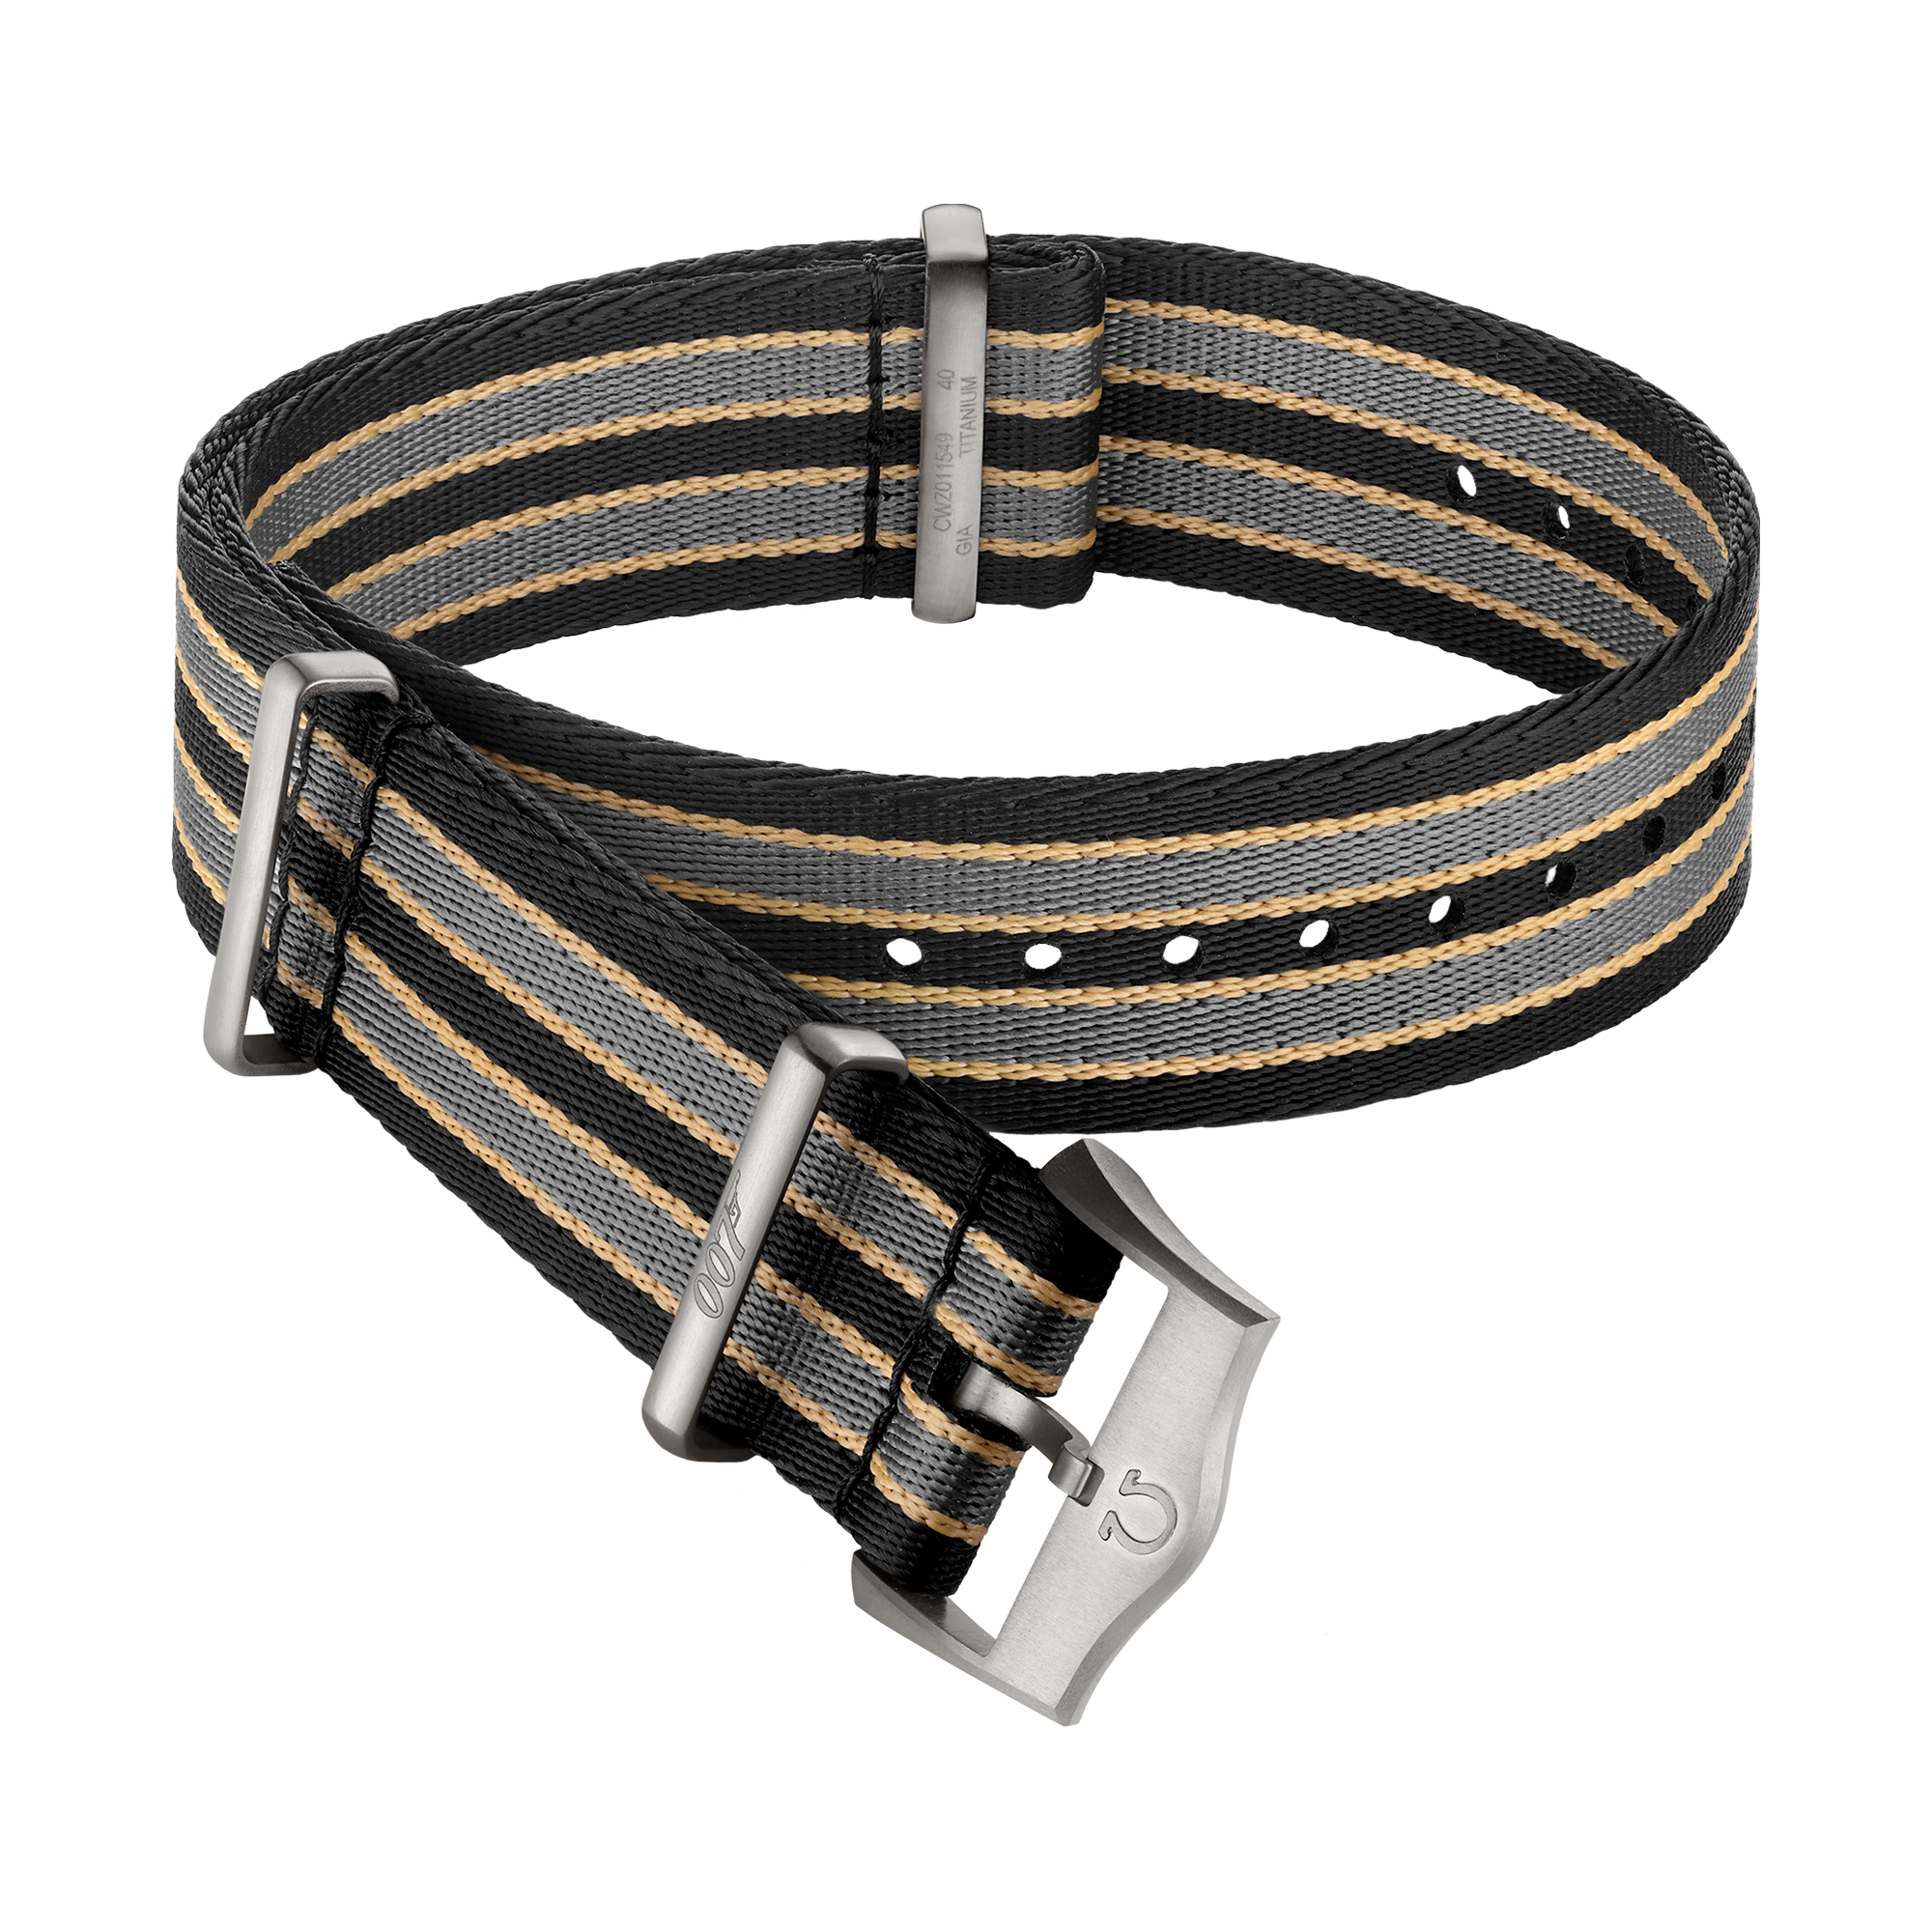 Cinturino NATO - Cinturino a righe marrone scuro, grigio e beige in poliammide - 031CWZ014739